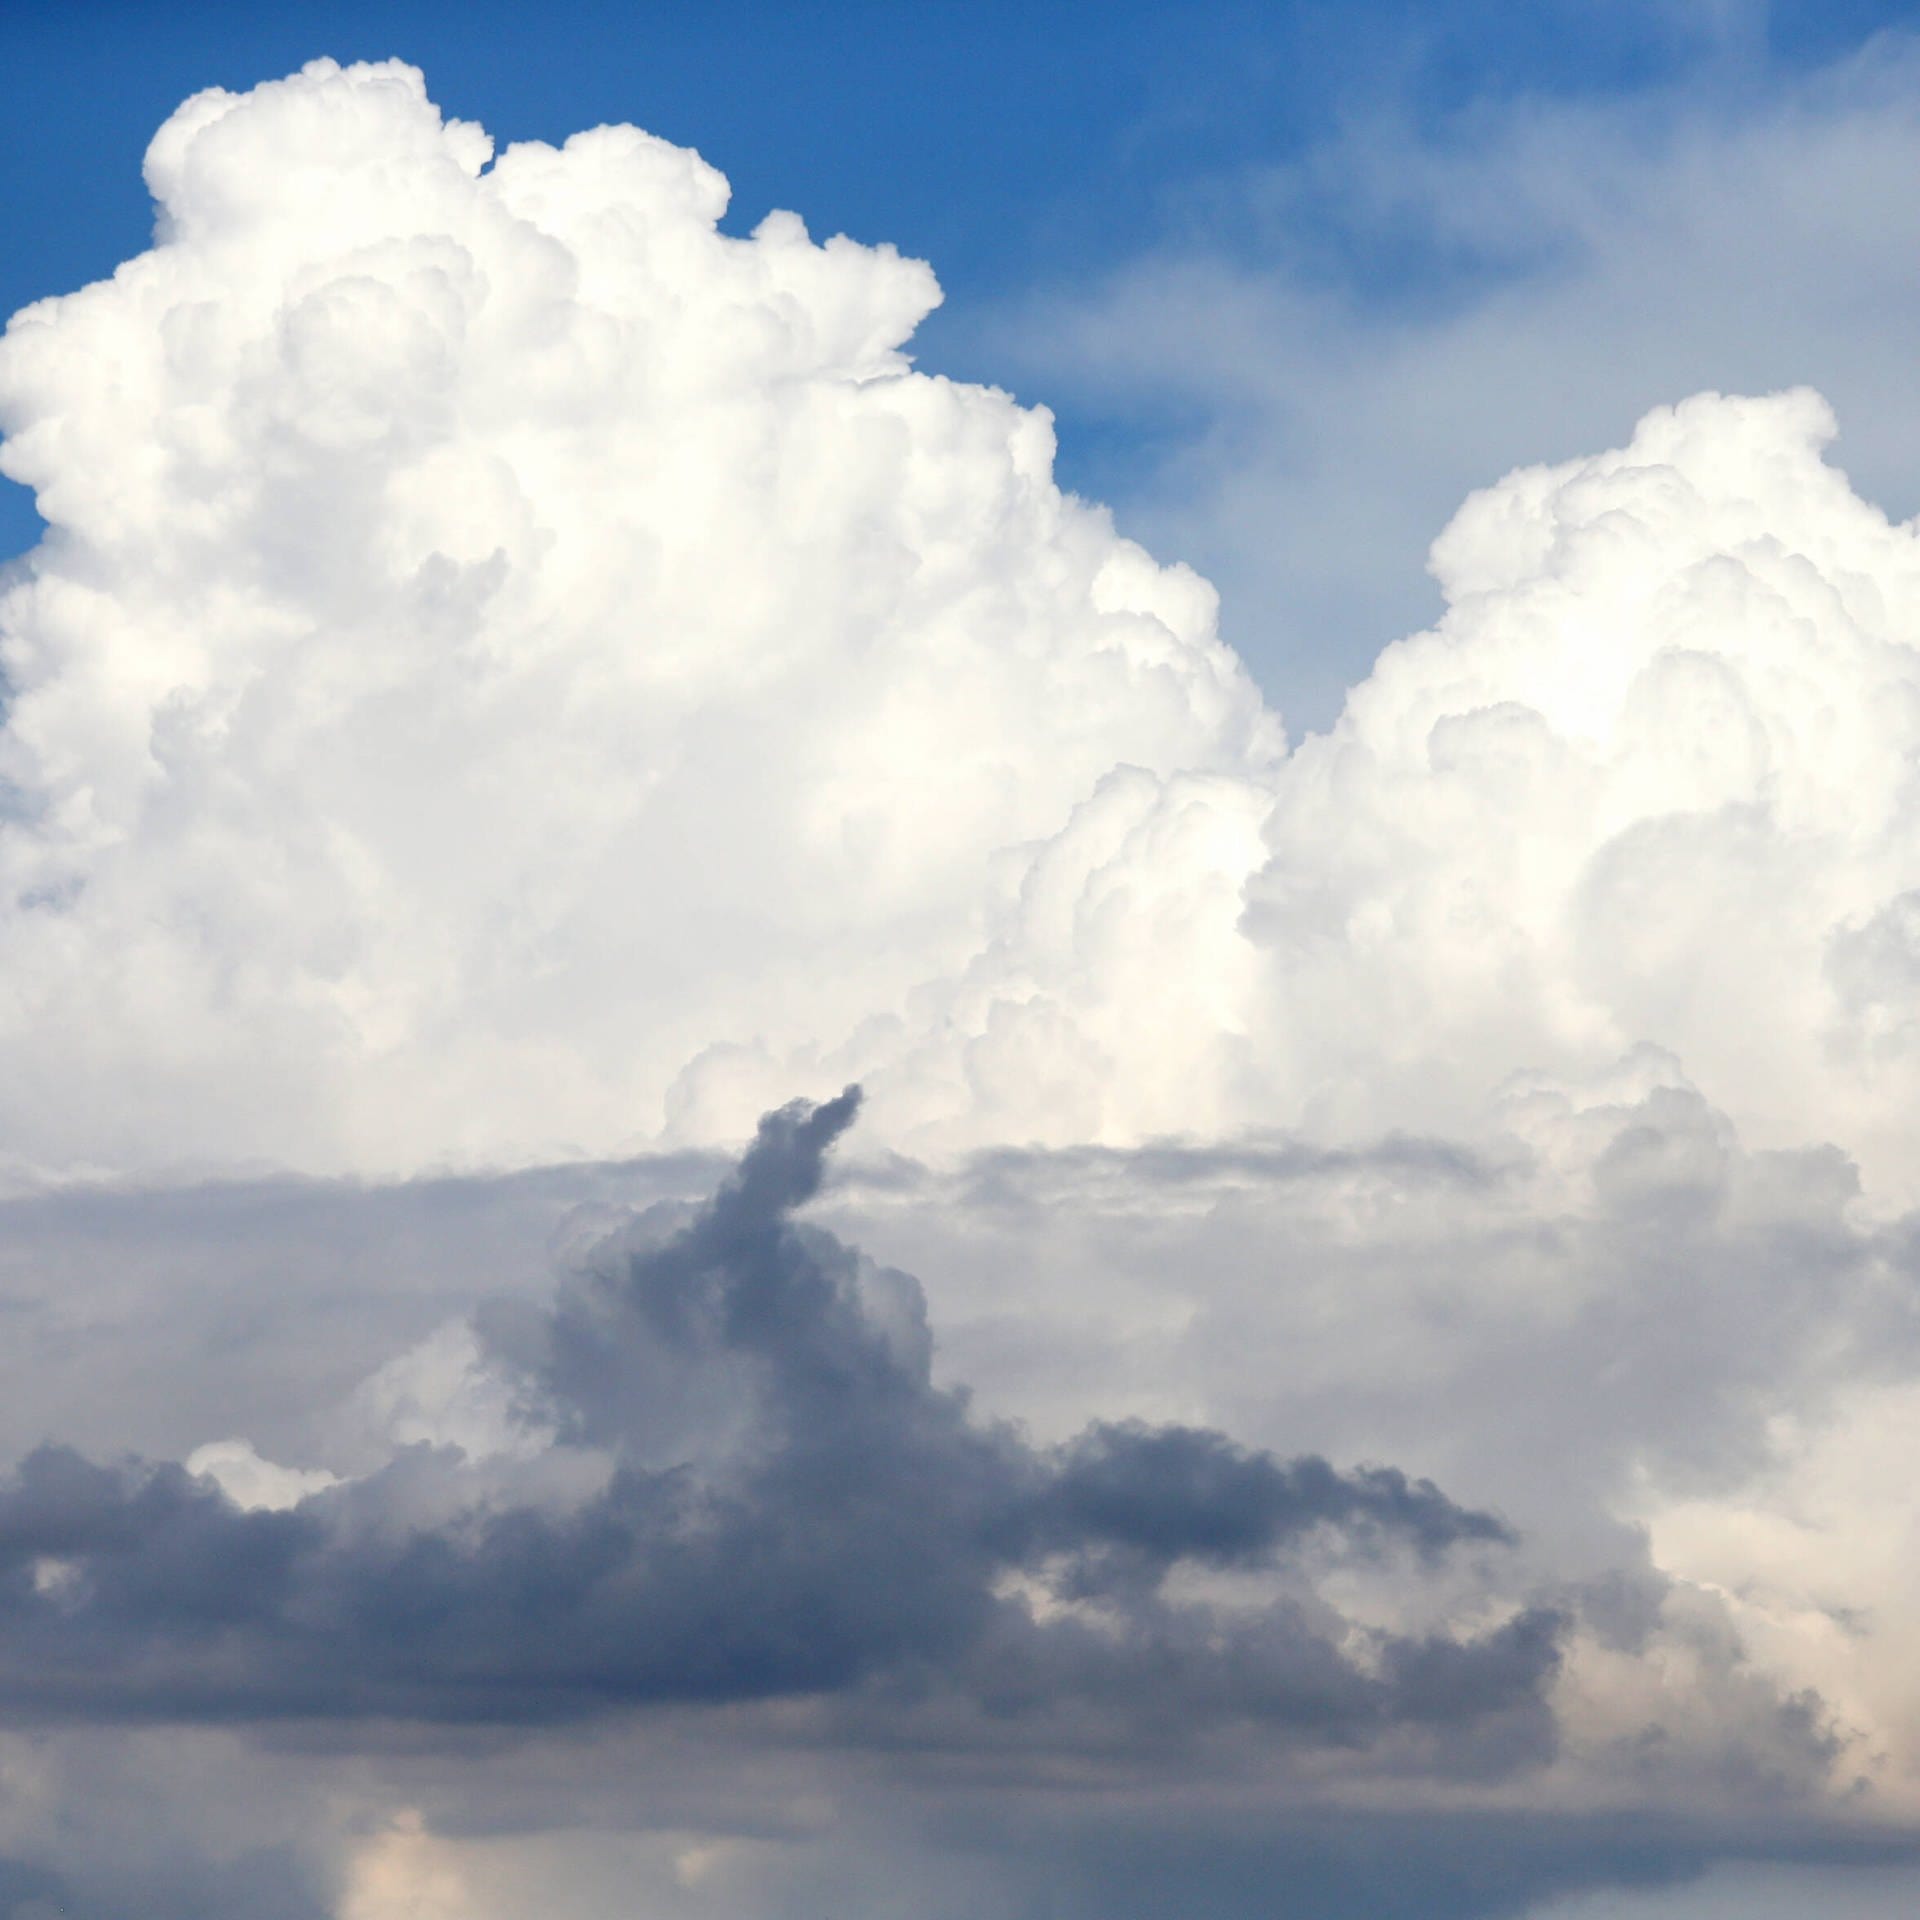 Wolkenforschung war hilfreich in der Pandemie | Atmosphärenforscherin Mira Pöhlker